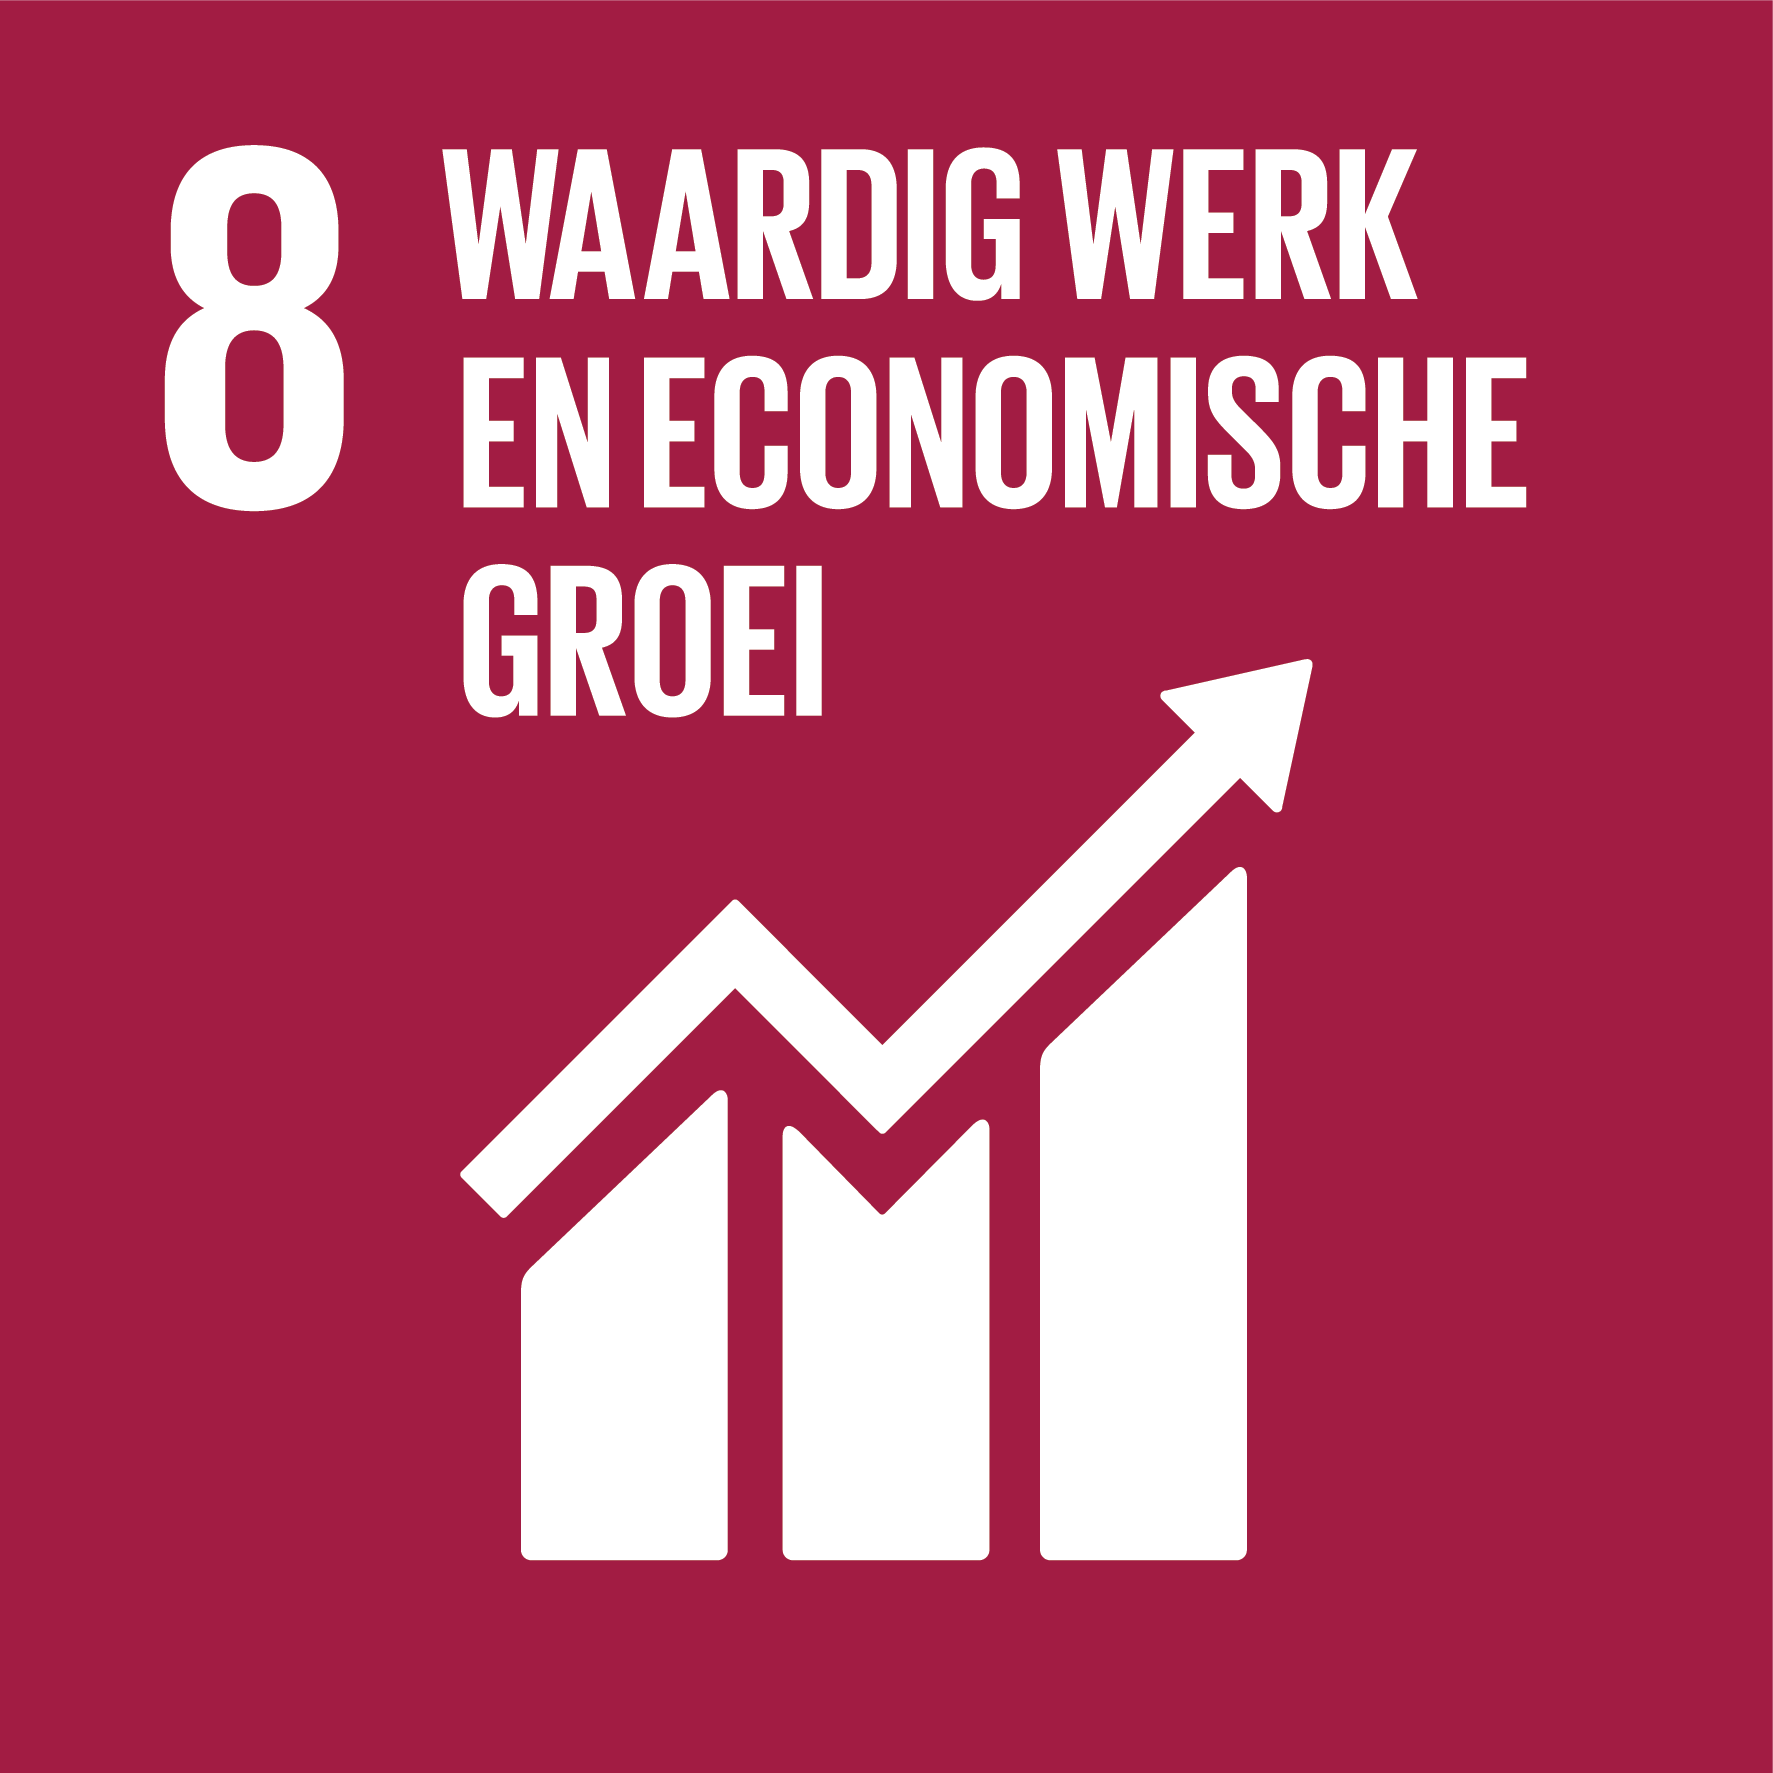 SDG-icon-NL-08-waardig-werk